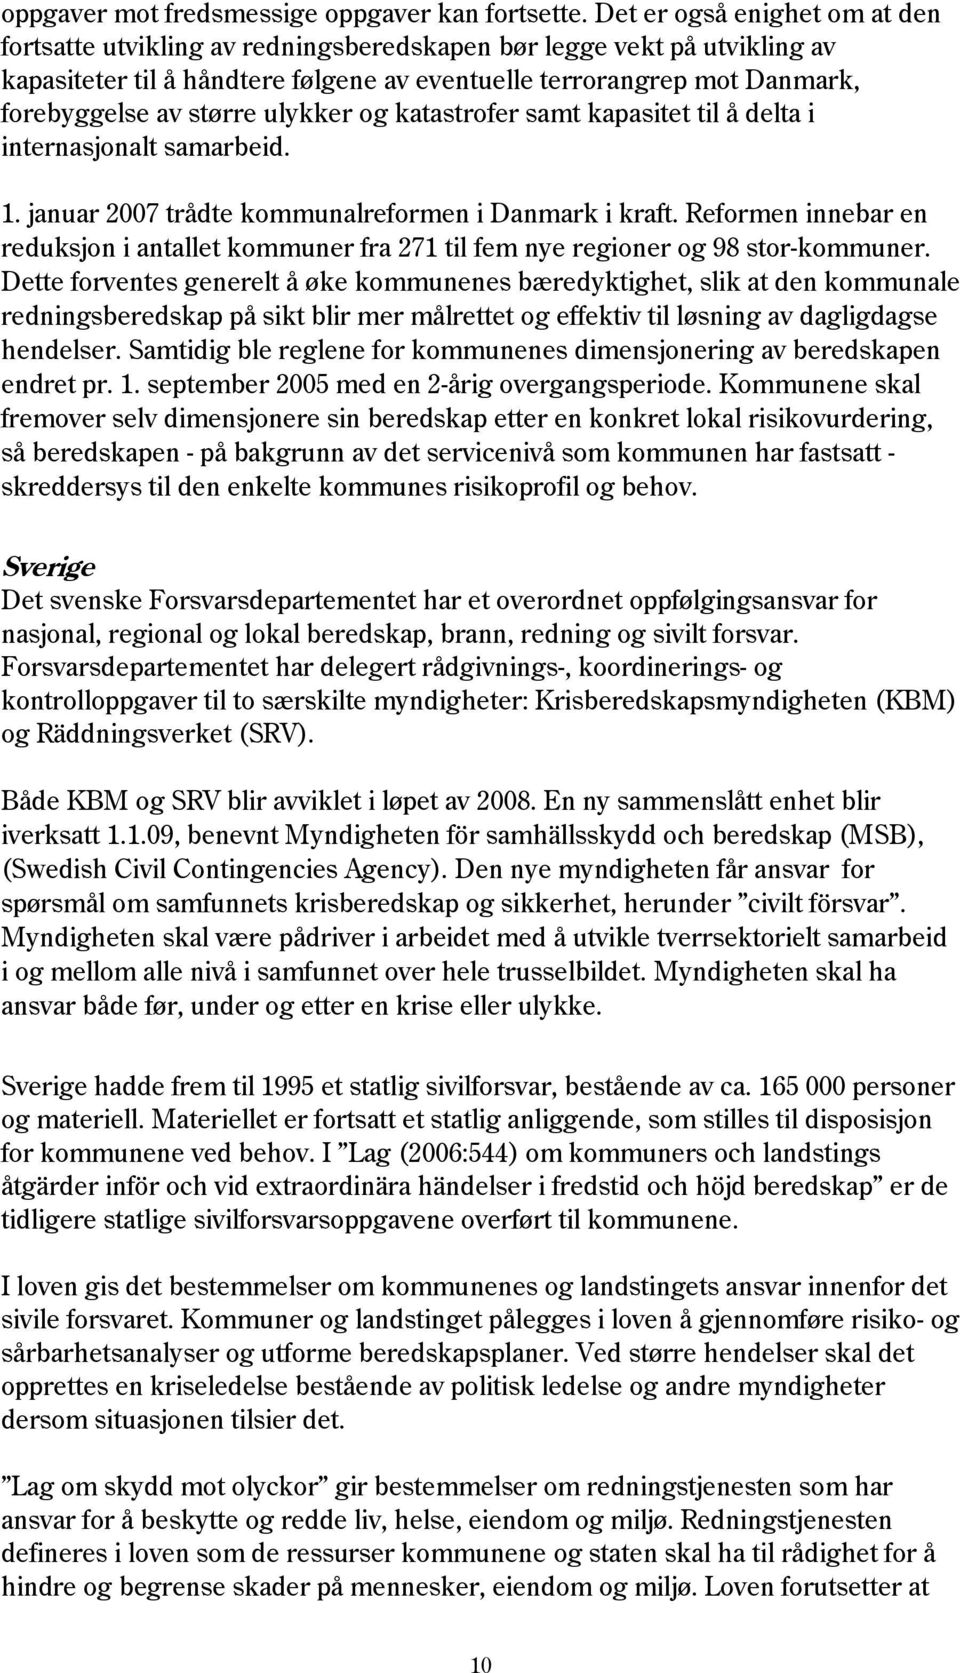 større ulykker og katastrofer samt kapasitet til å delta i internasjonalt samarbeid. 1. januar 2007 trådte kommunalreformen i Danmark i kraft.